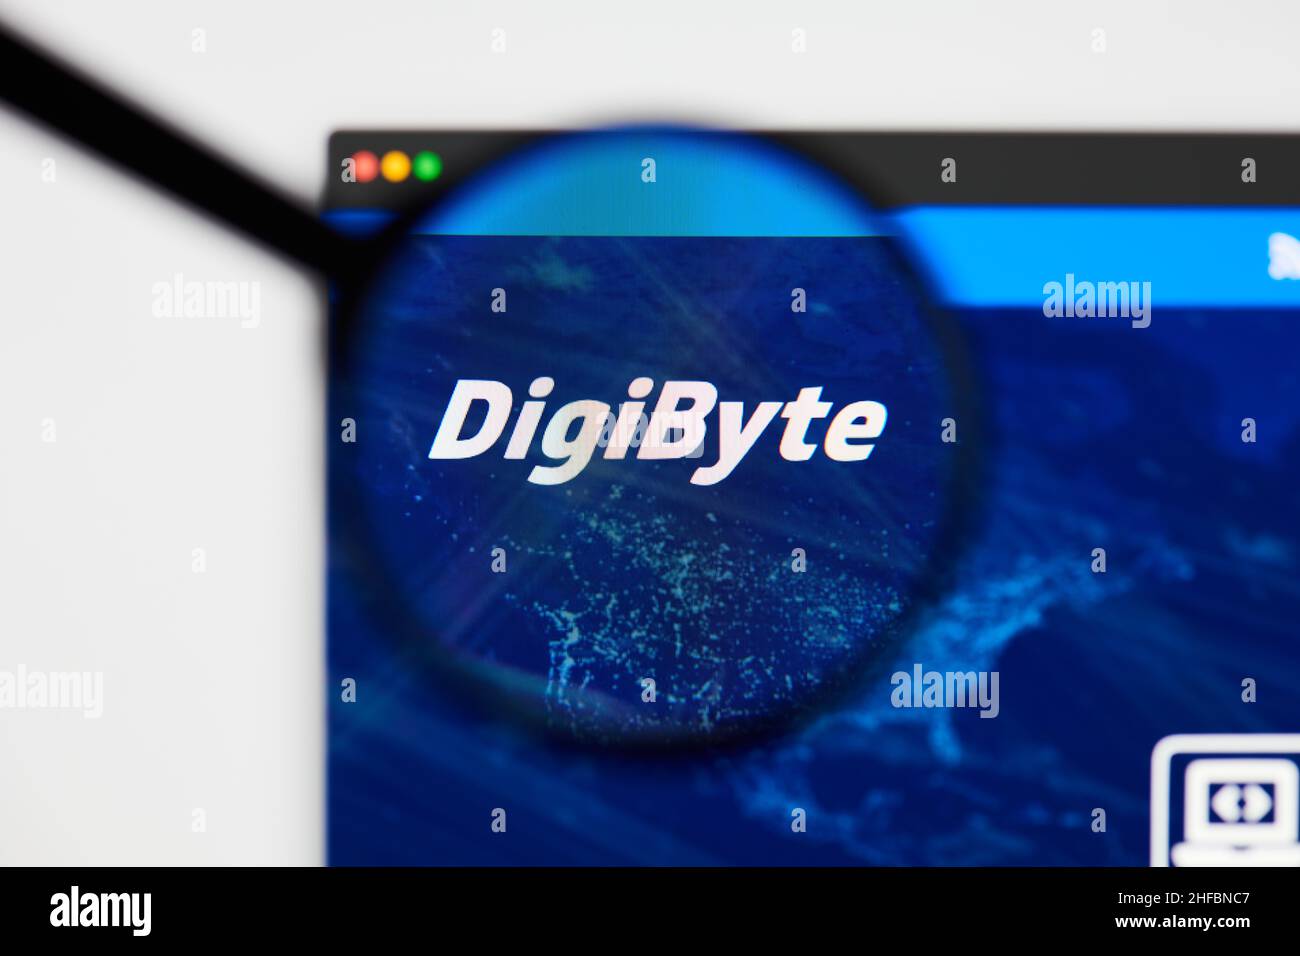 Milano, Italia - 11 gennaio 2022: Digibyte - hp. Digibyte, il logo della moneta DGB visibile attraverso un loope. Defi, ntf, concetti di criptovaluta malati Foto Stock